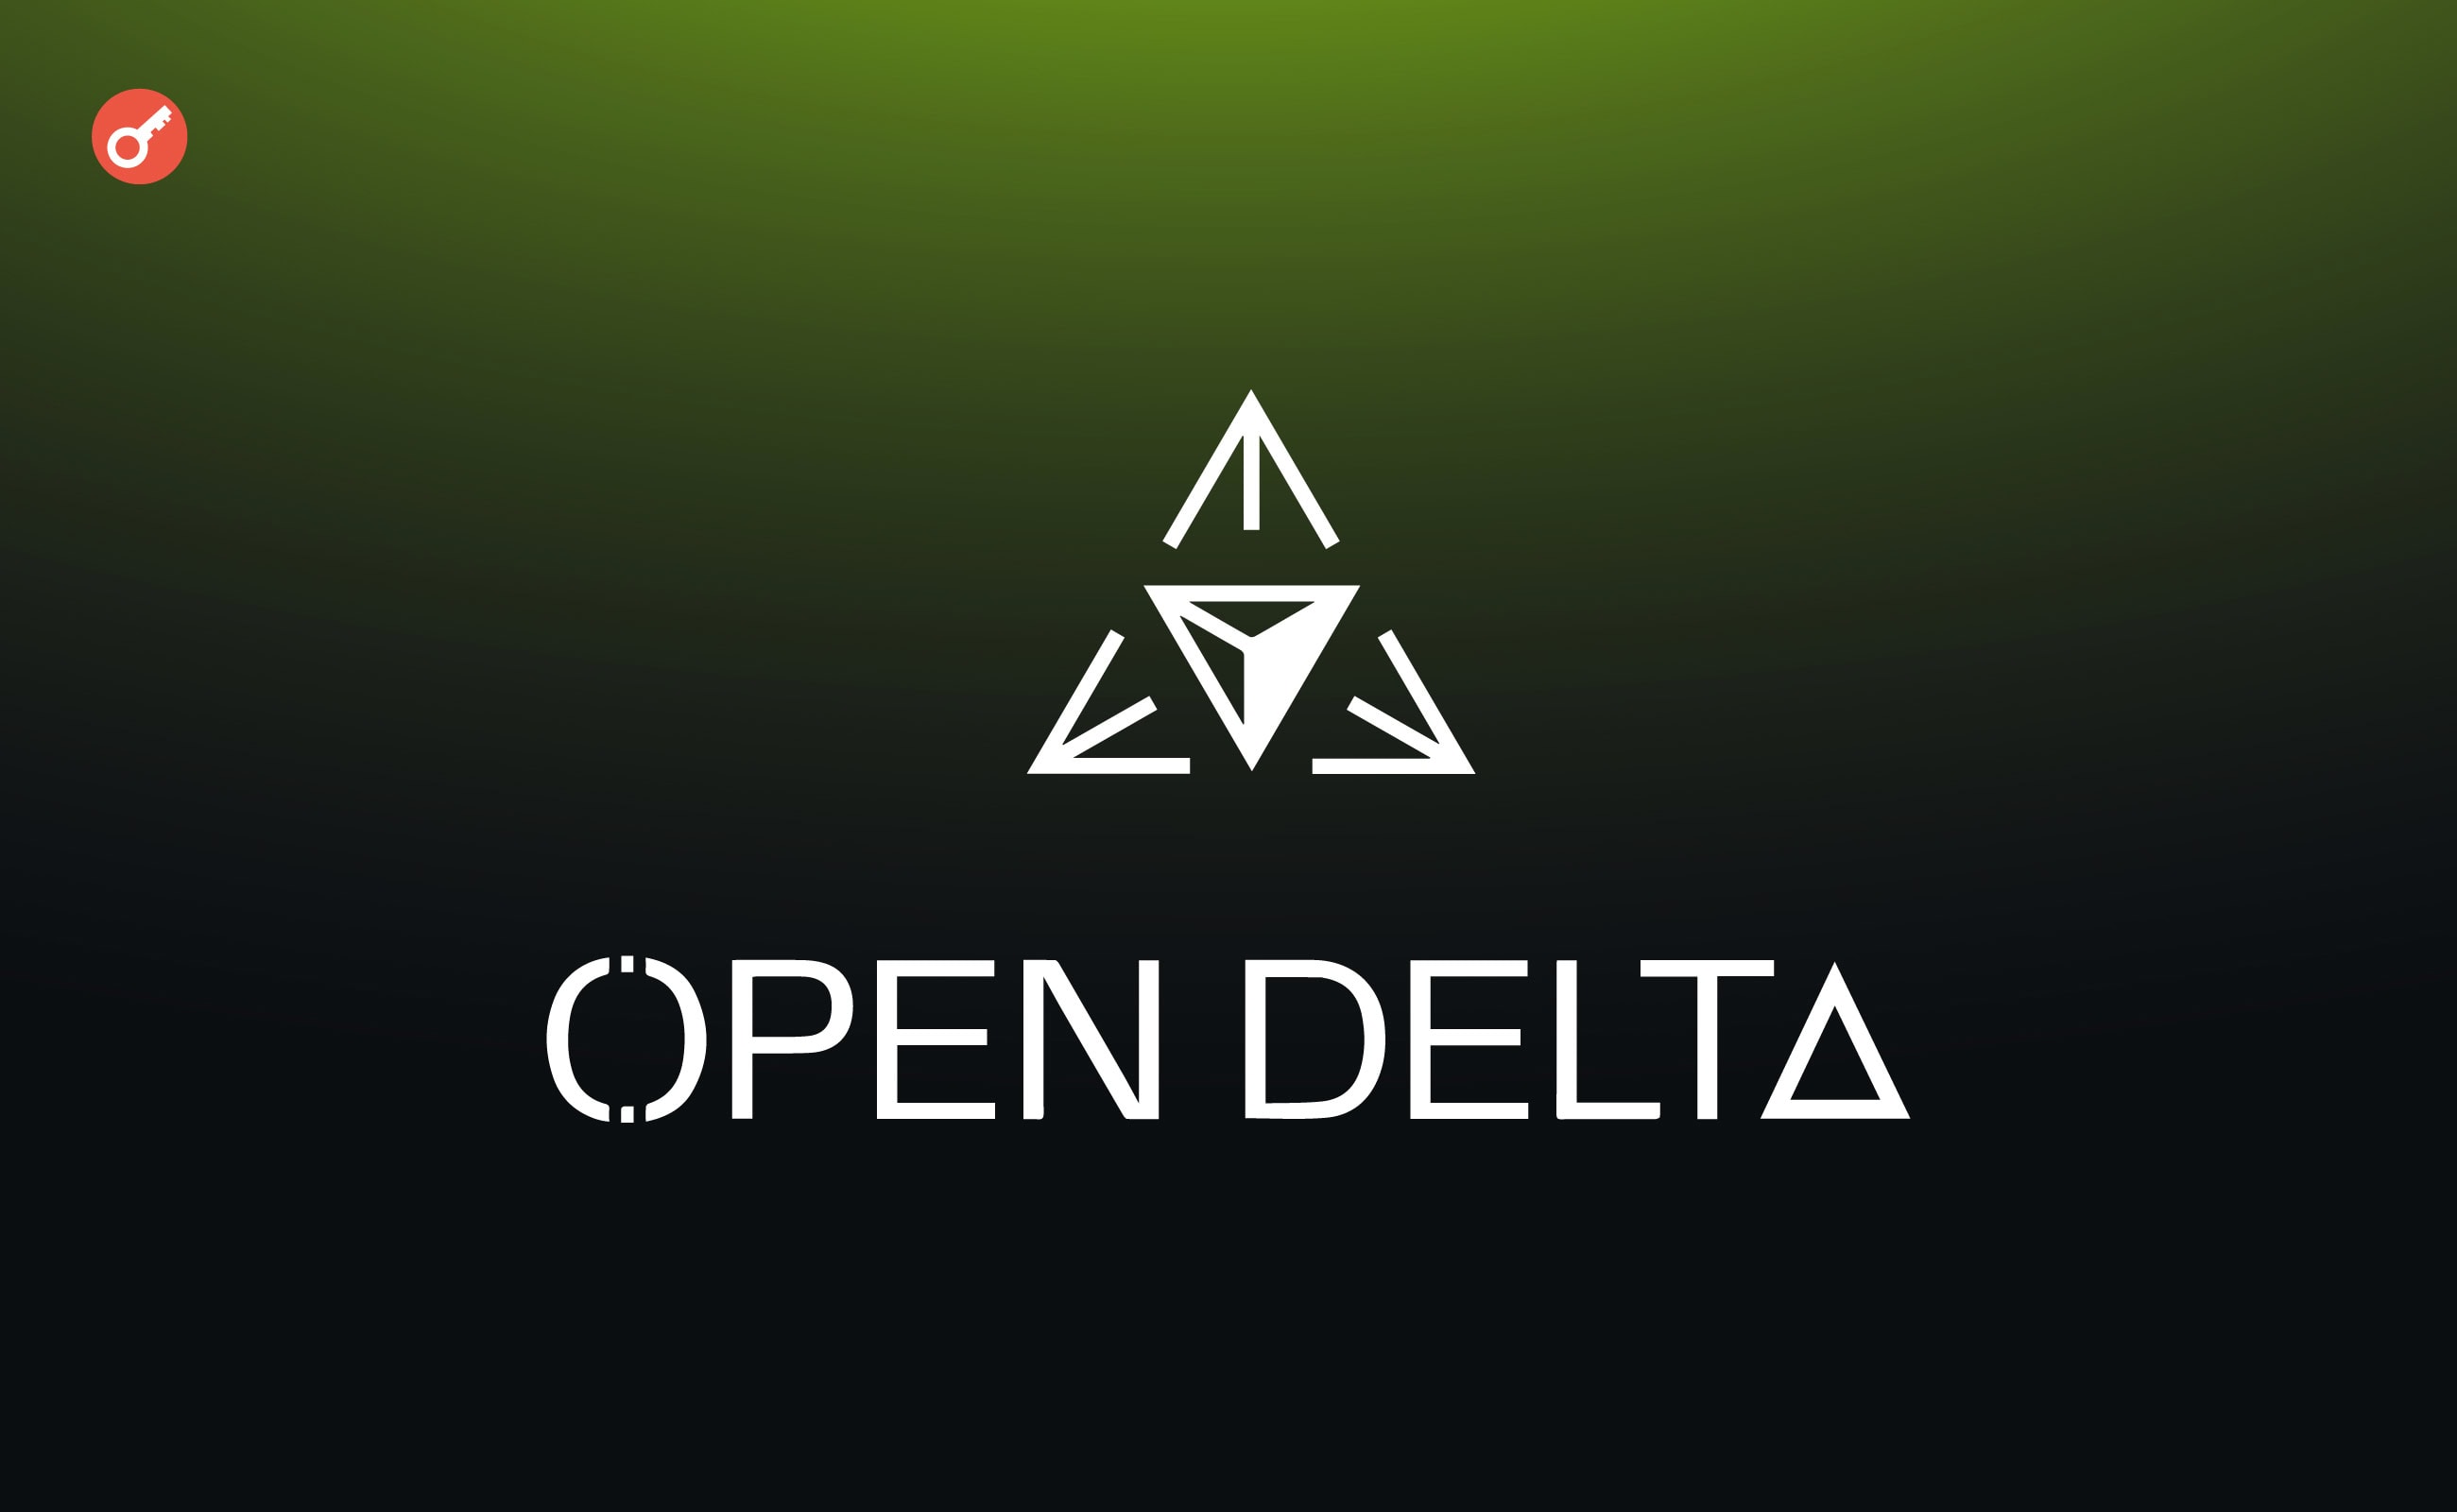 Команда OpenDelta объявила о привлечении $2,15 млн. Заглавный коллаж новости.